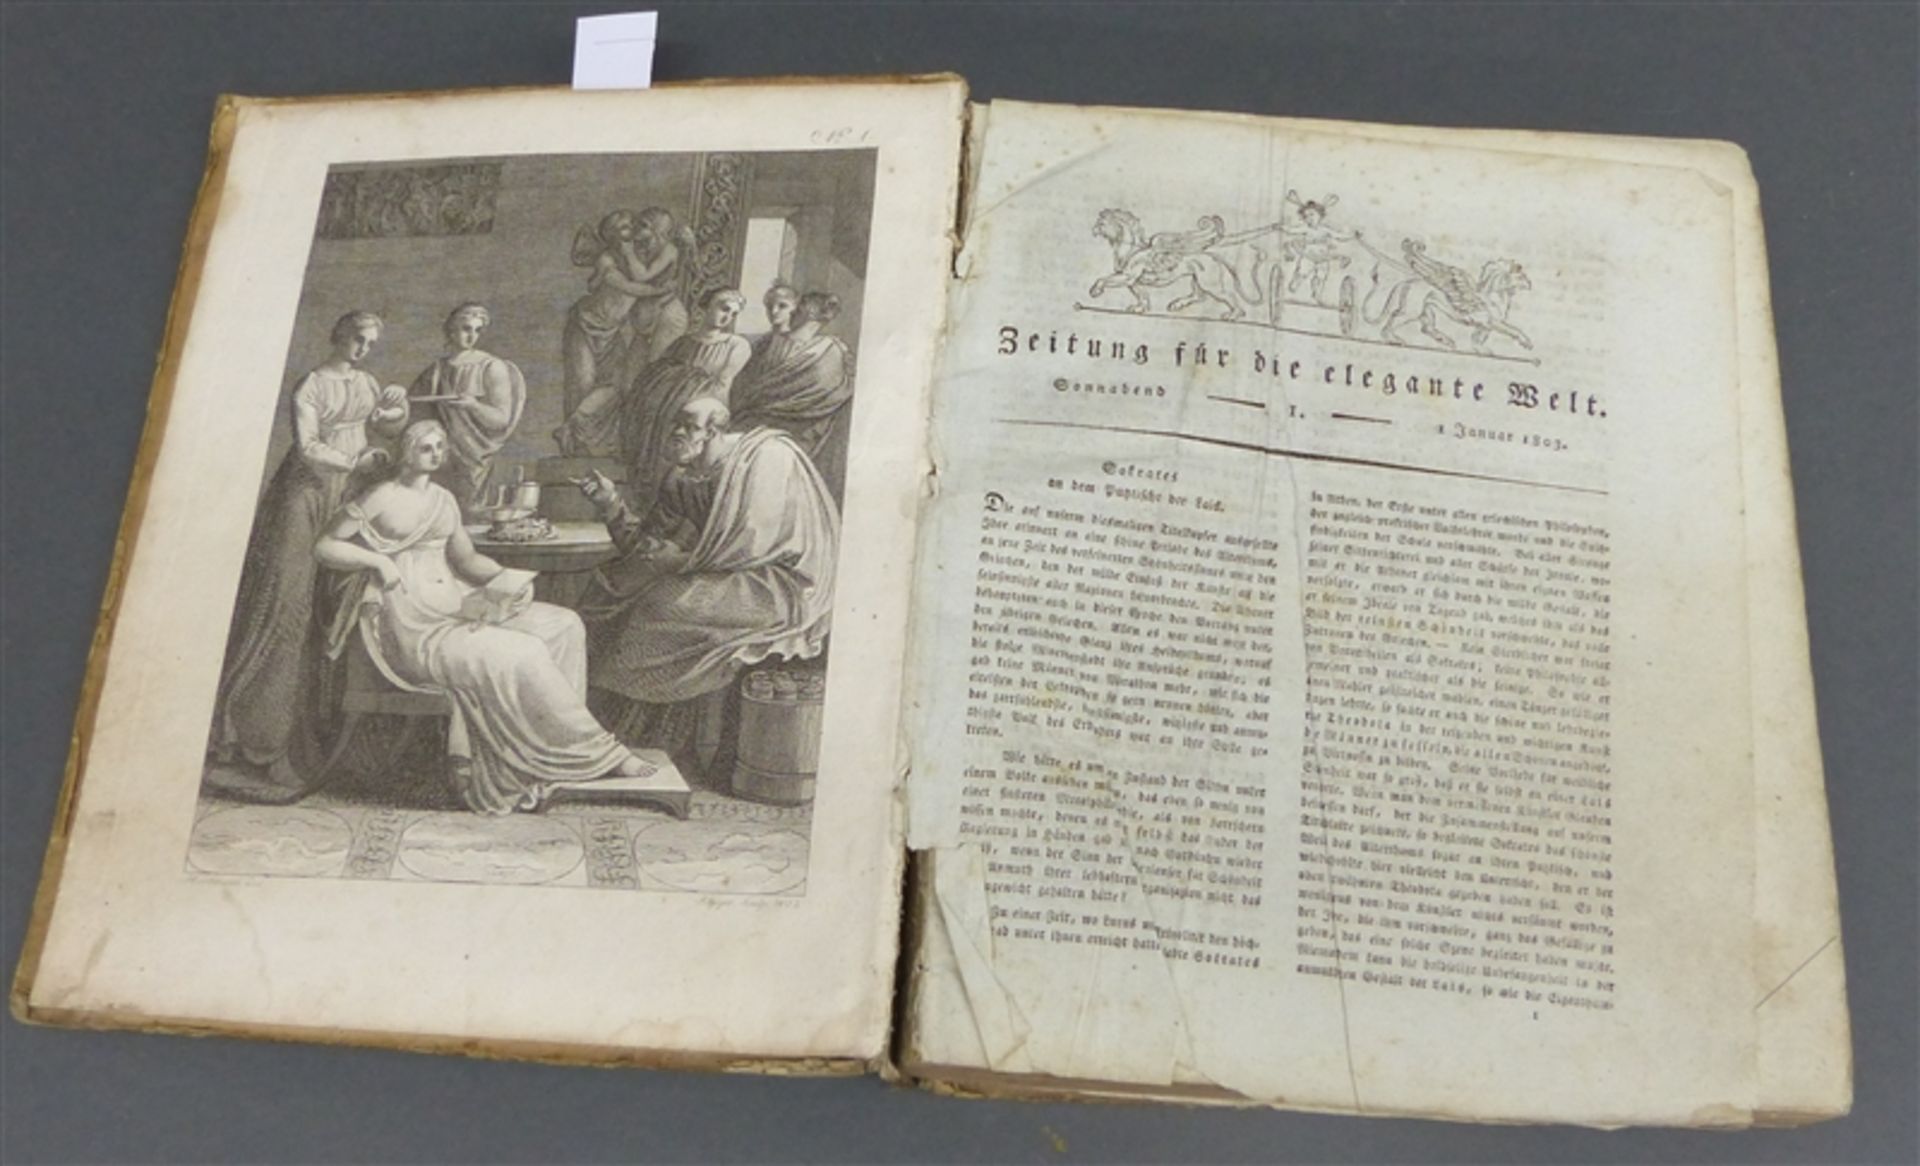 Buch Zeitung für die elegante Welt, Leipzig 1803, mit teilweise colorierten Stichen, stockfleckig,